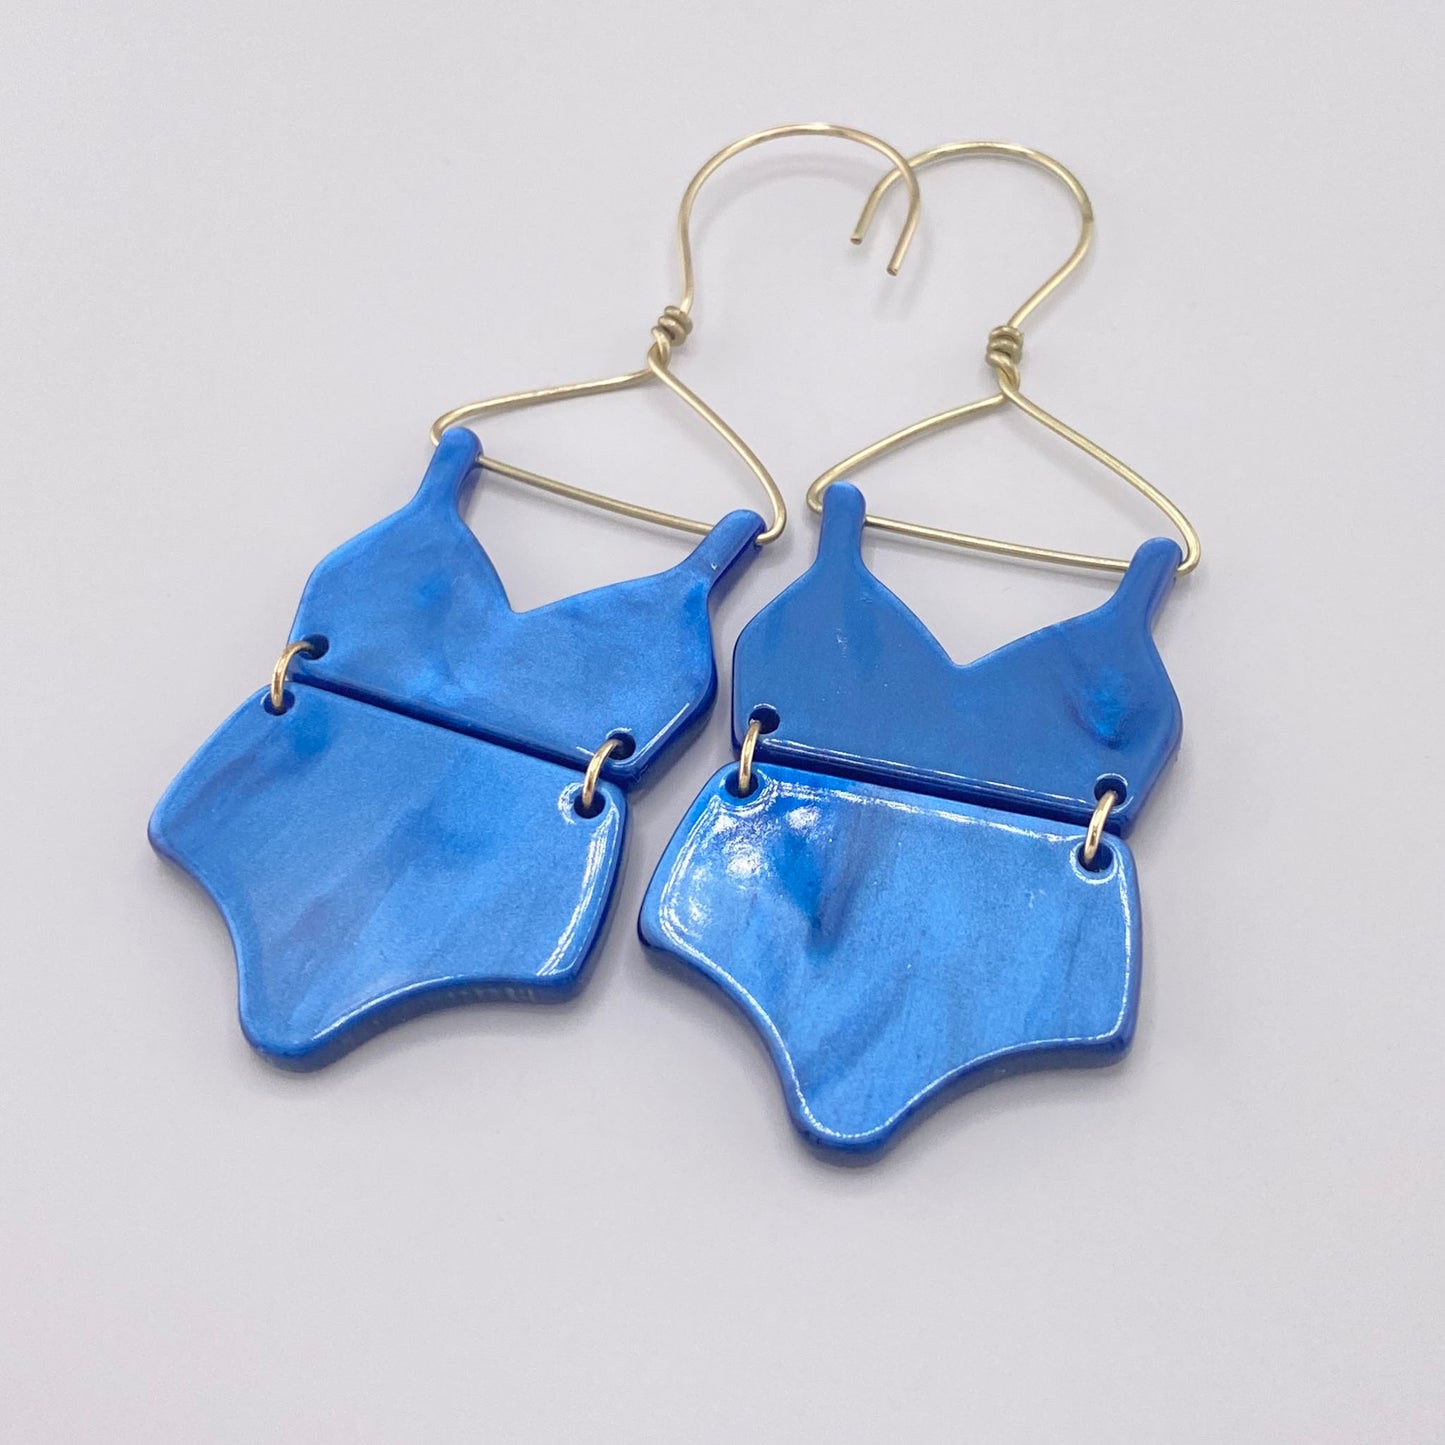 Swimsuit earrings